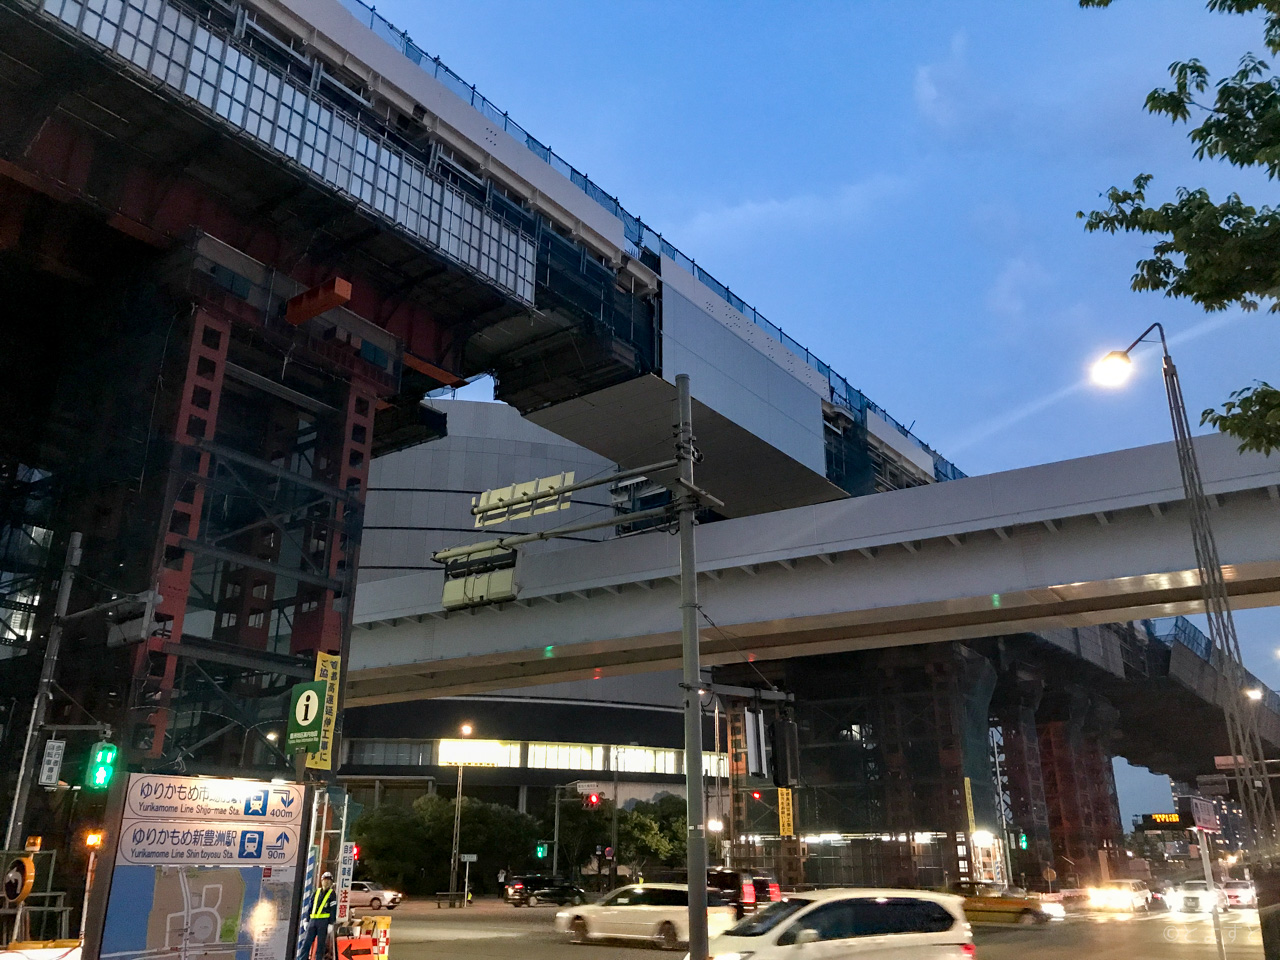 新豊洲駅付近、ゆりかもめの上を首都高晴海線が跨ぐ高架工事が実施